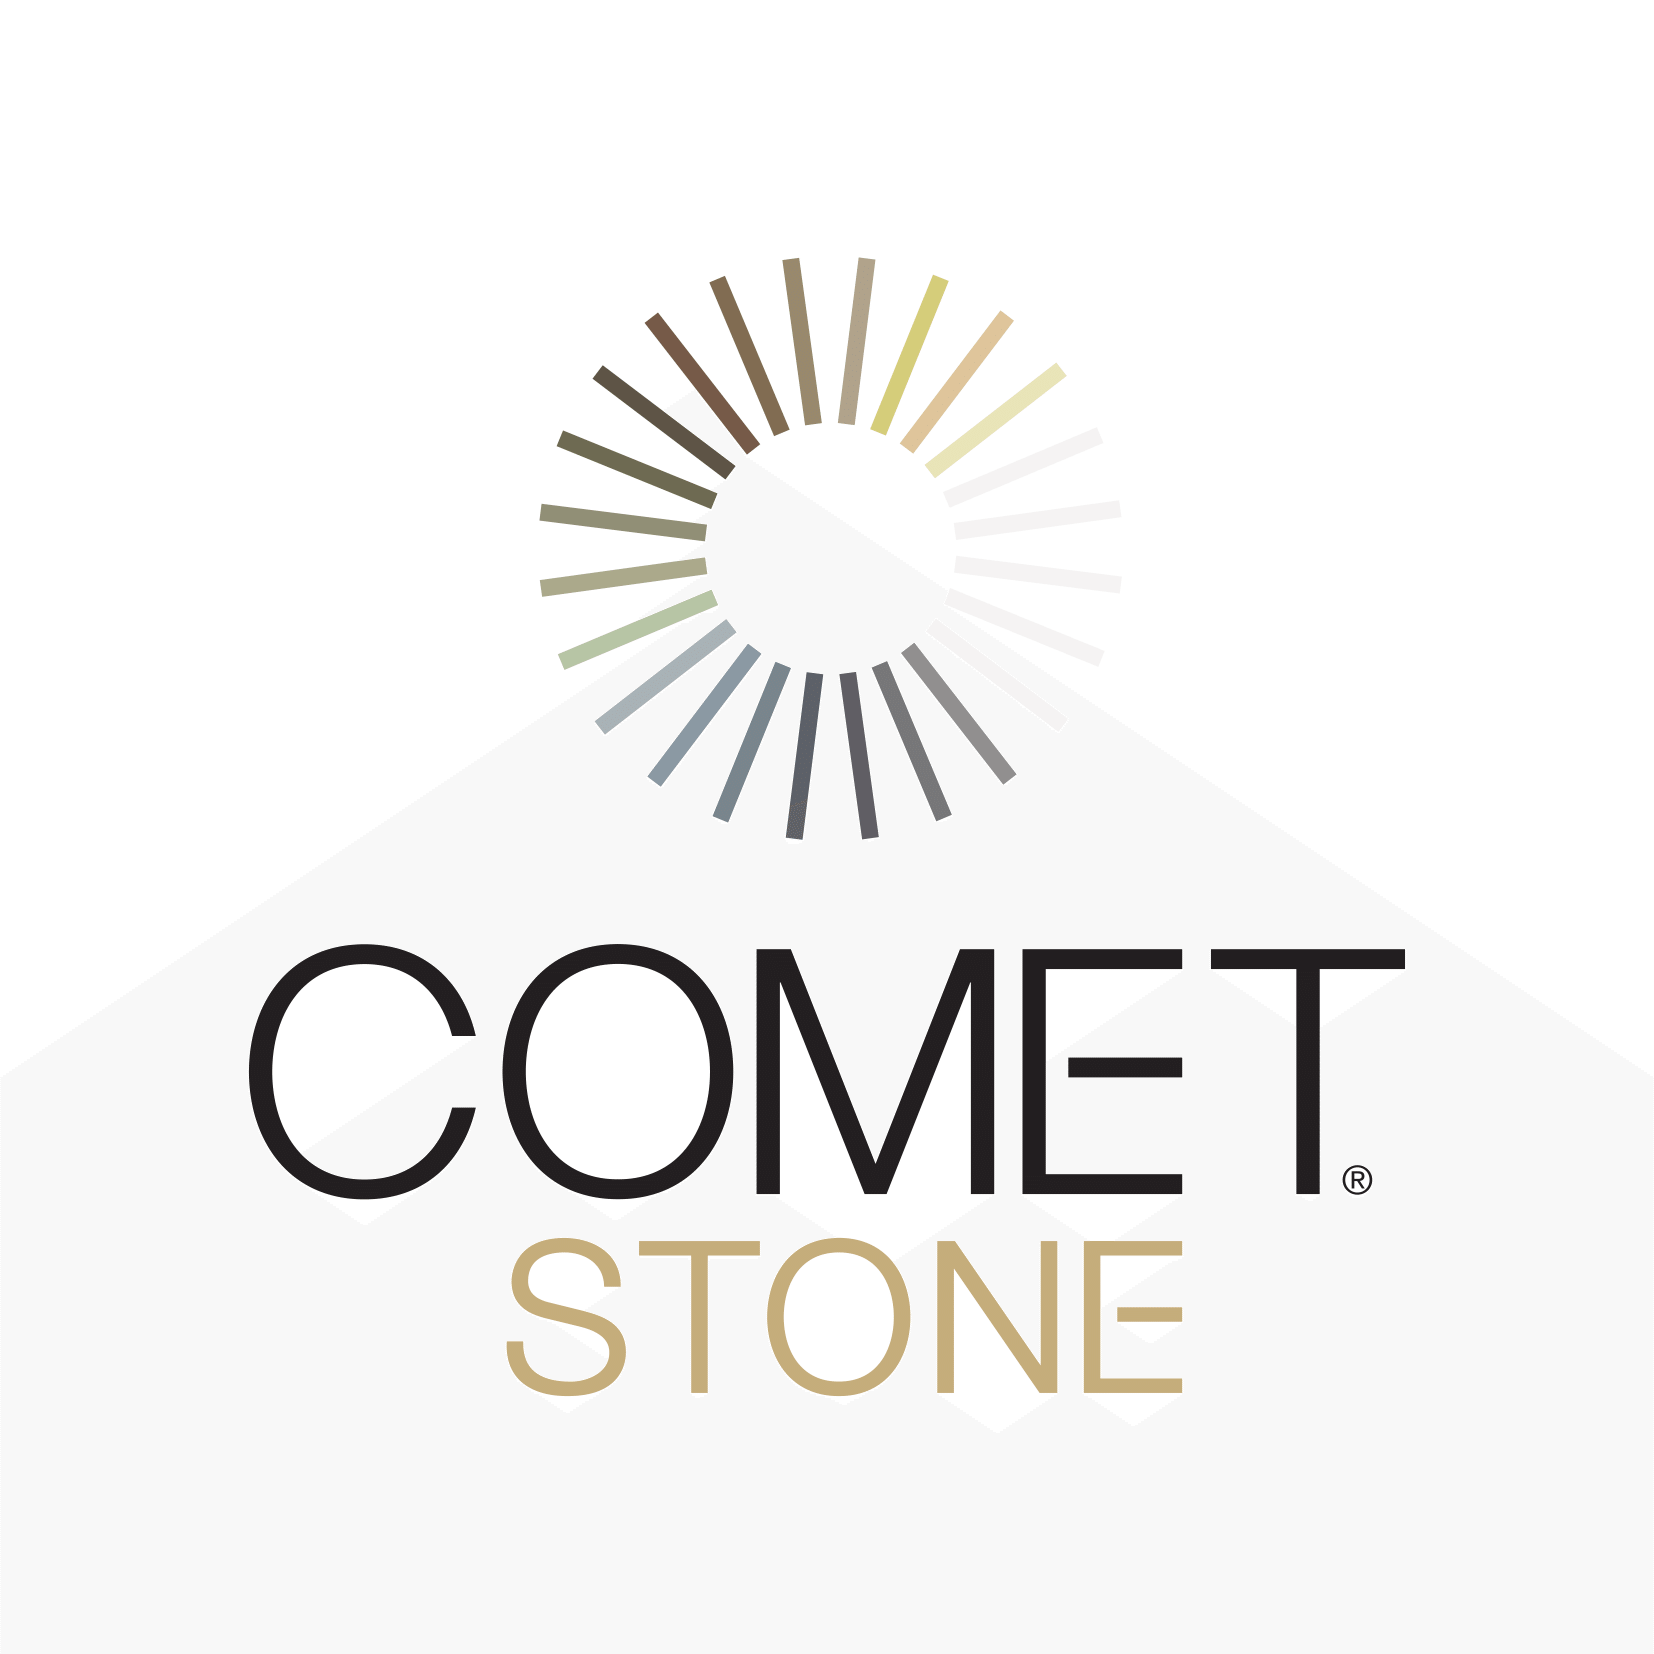 Comet Stone